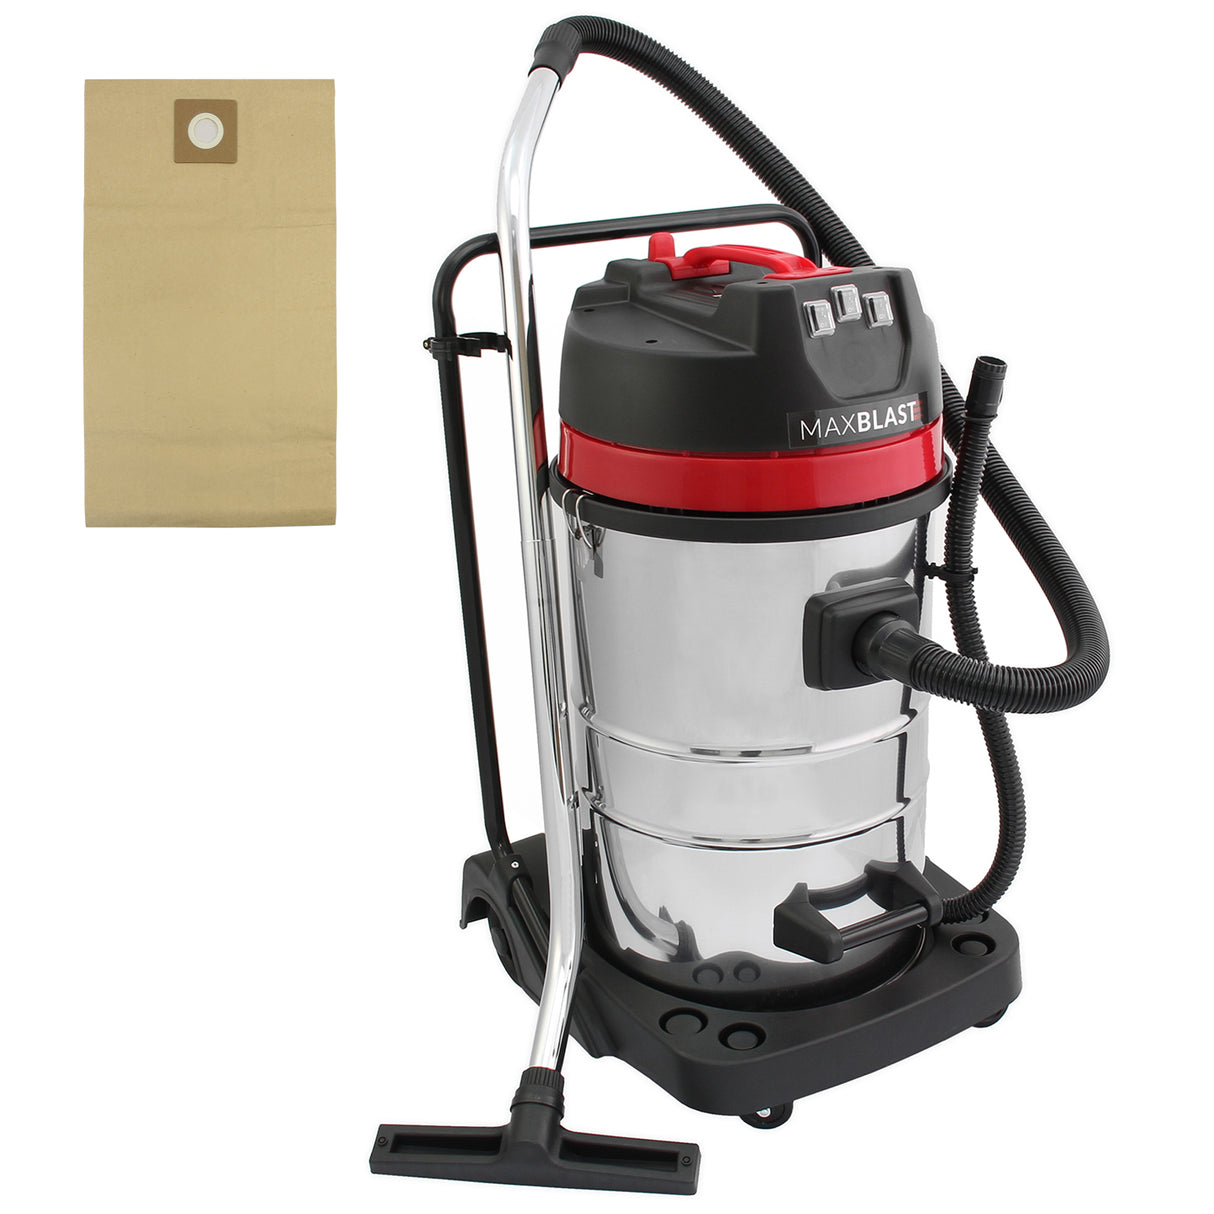 MAXBLAST 80L Vacuum Cleaner Dust Bags, 5 Pack